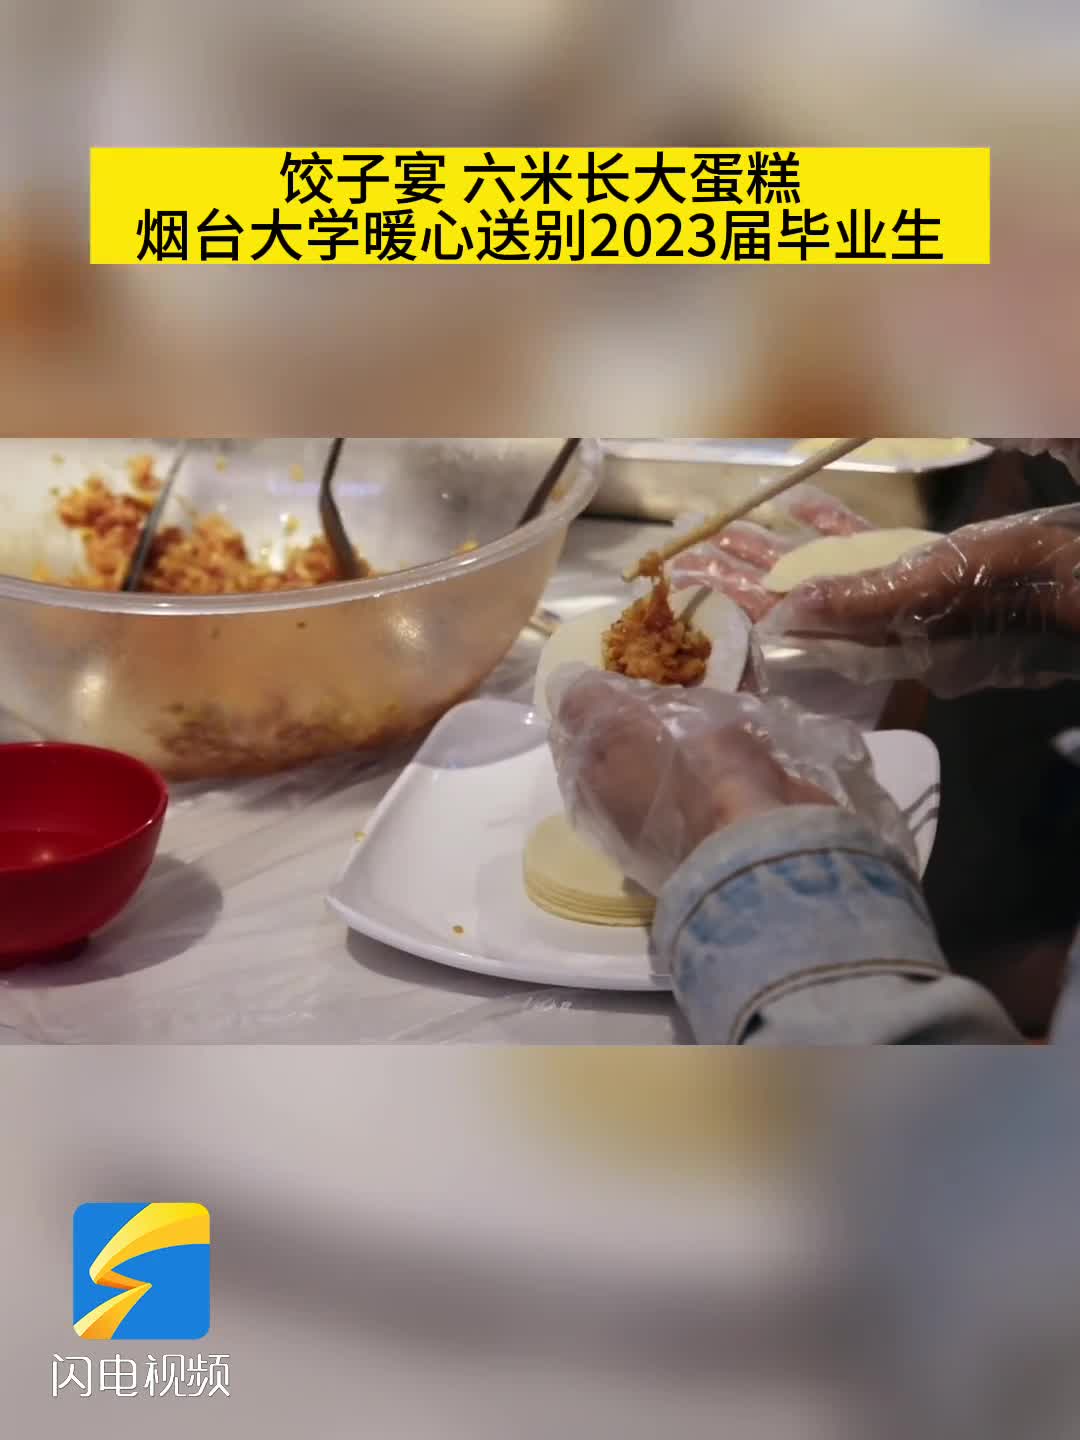 饺子宴、六米长大蛋糕……烟台大学暖心送别2023届毕业生